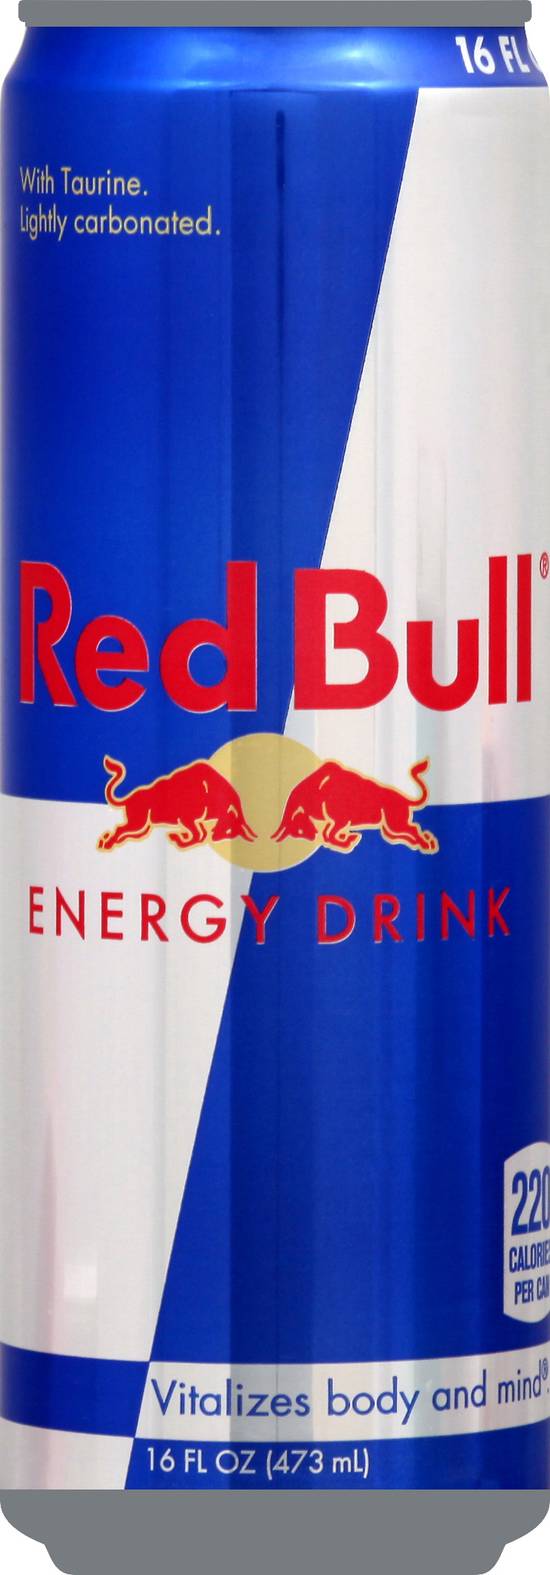 Red Bull Energy Drink (16fl oz)